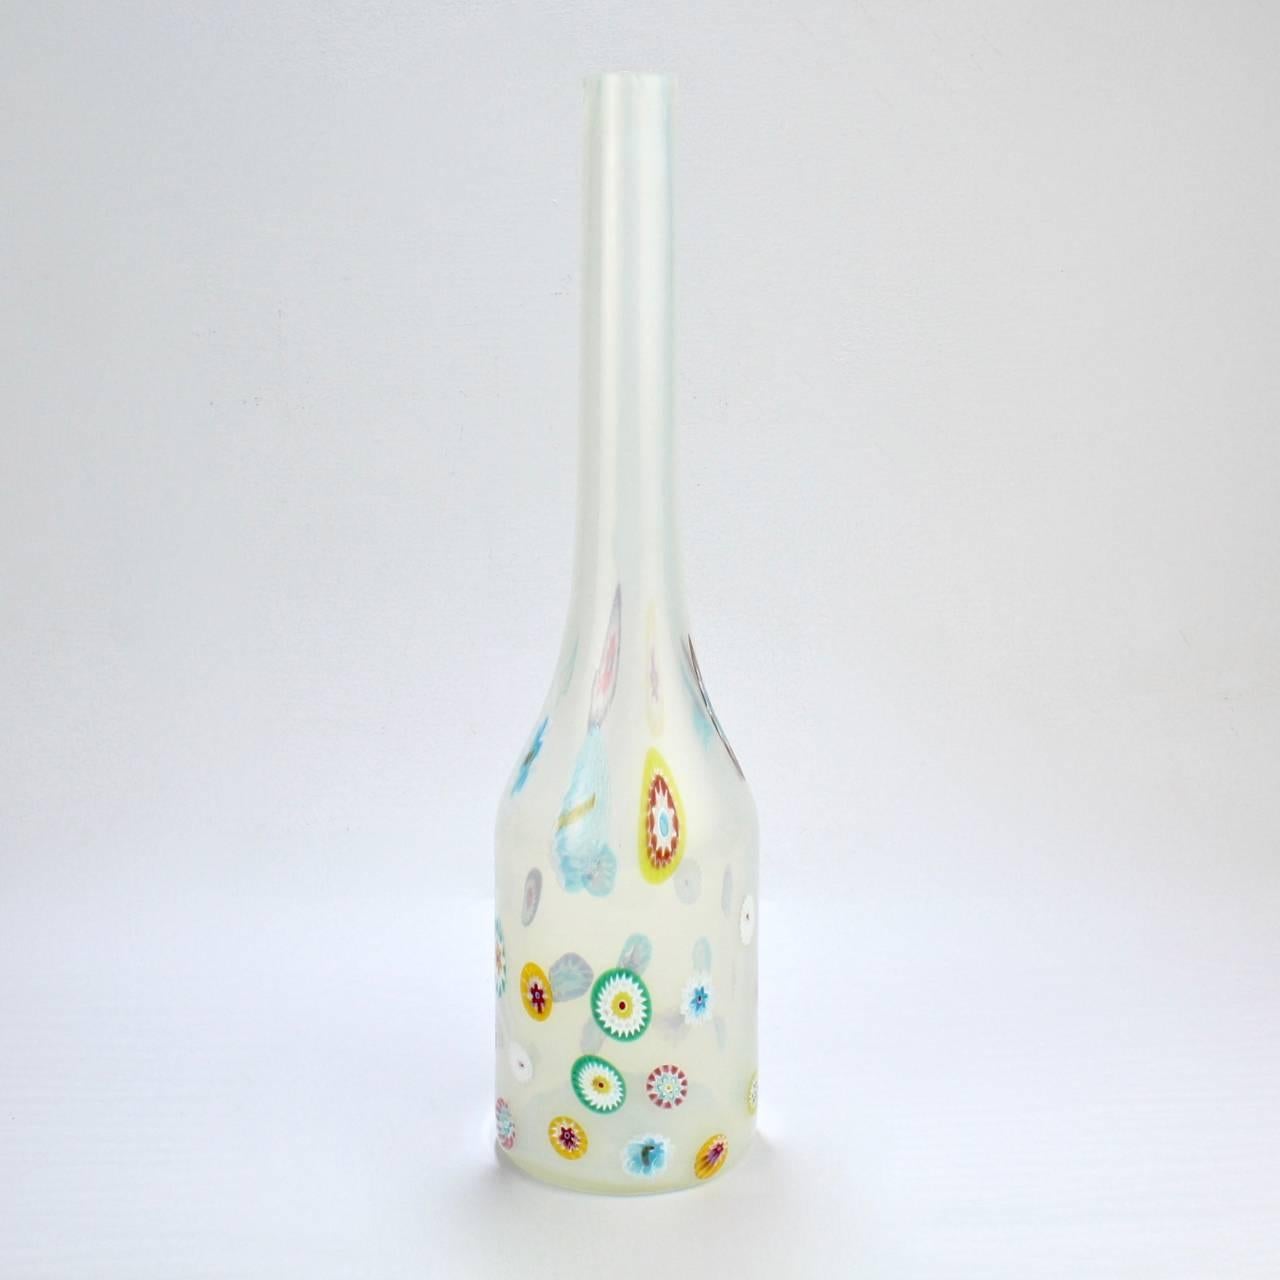 Eine seltene venezianische Glasvase in Form einer weißen Flasche von Ermanno Toso mit durchgehendem Murrin. 

Von ähnlicher Form wie die Flaschenvasen der Nerox-Linie von Toso.

Der Sockel trägt ein Label von Fratelli Toso, hergestellt in